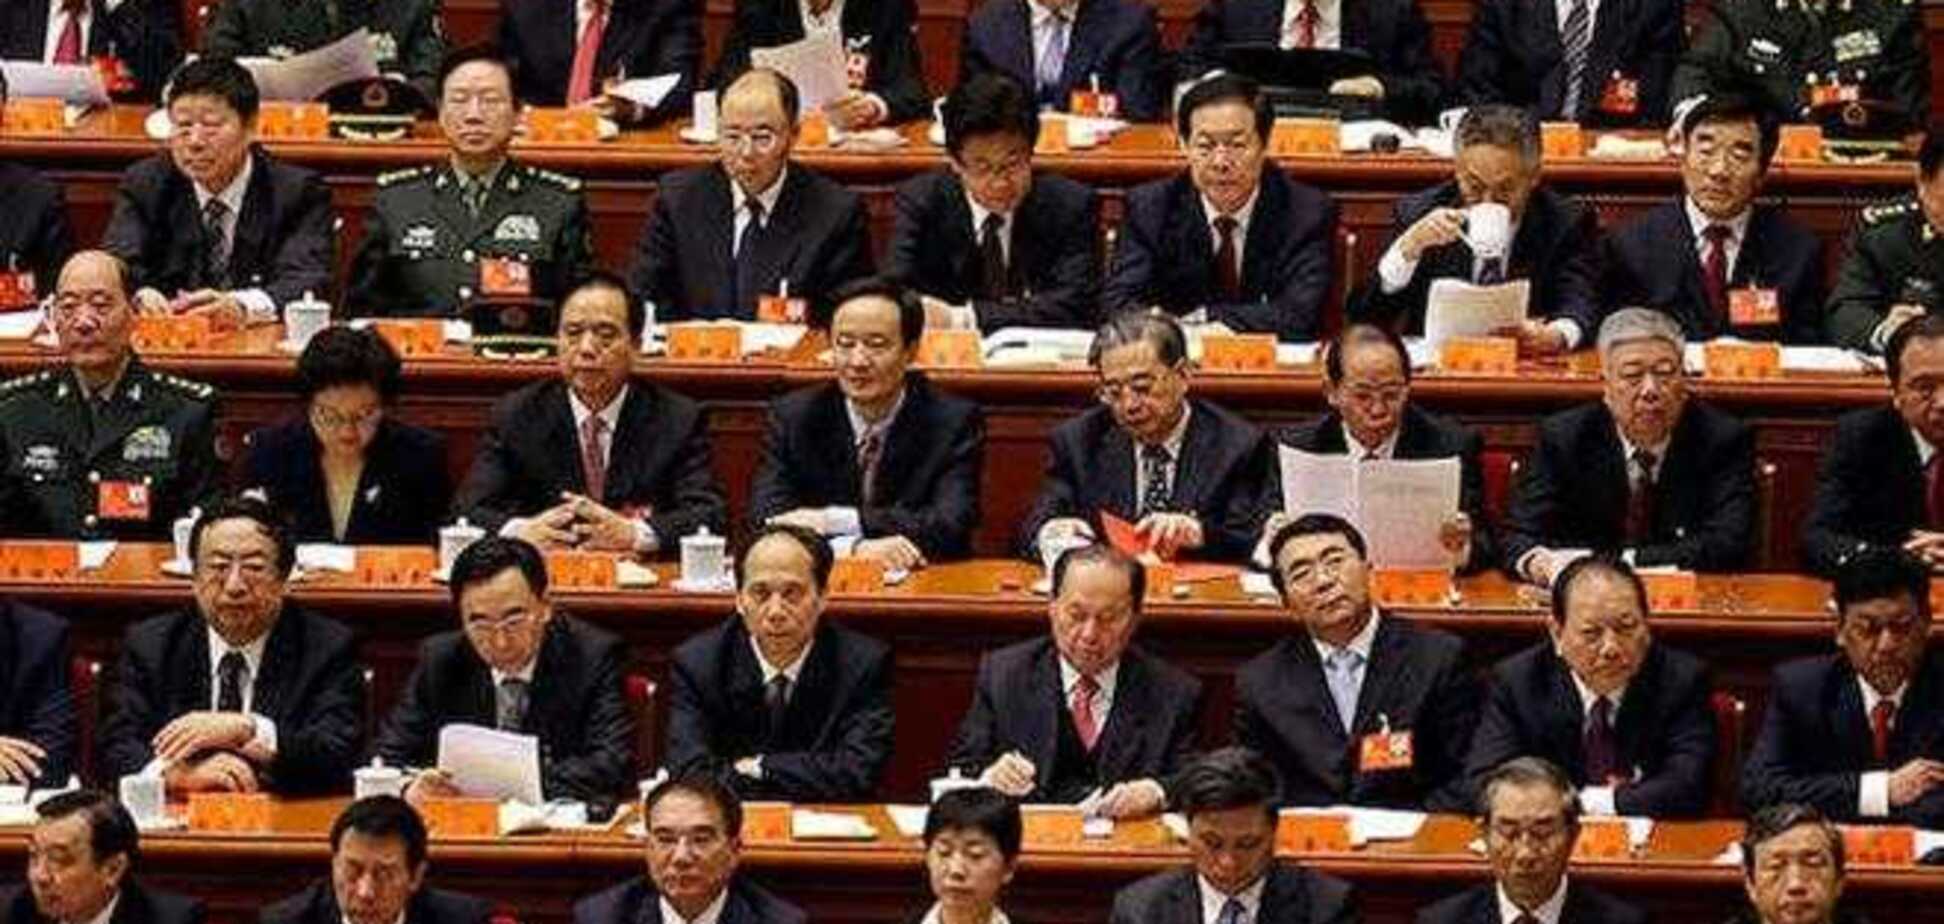 За 2013 год в Китае наказали более 180 тыс. чиновников-коррупционеров